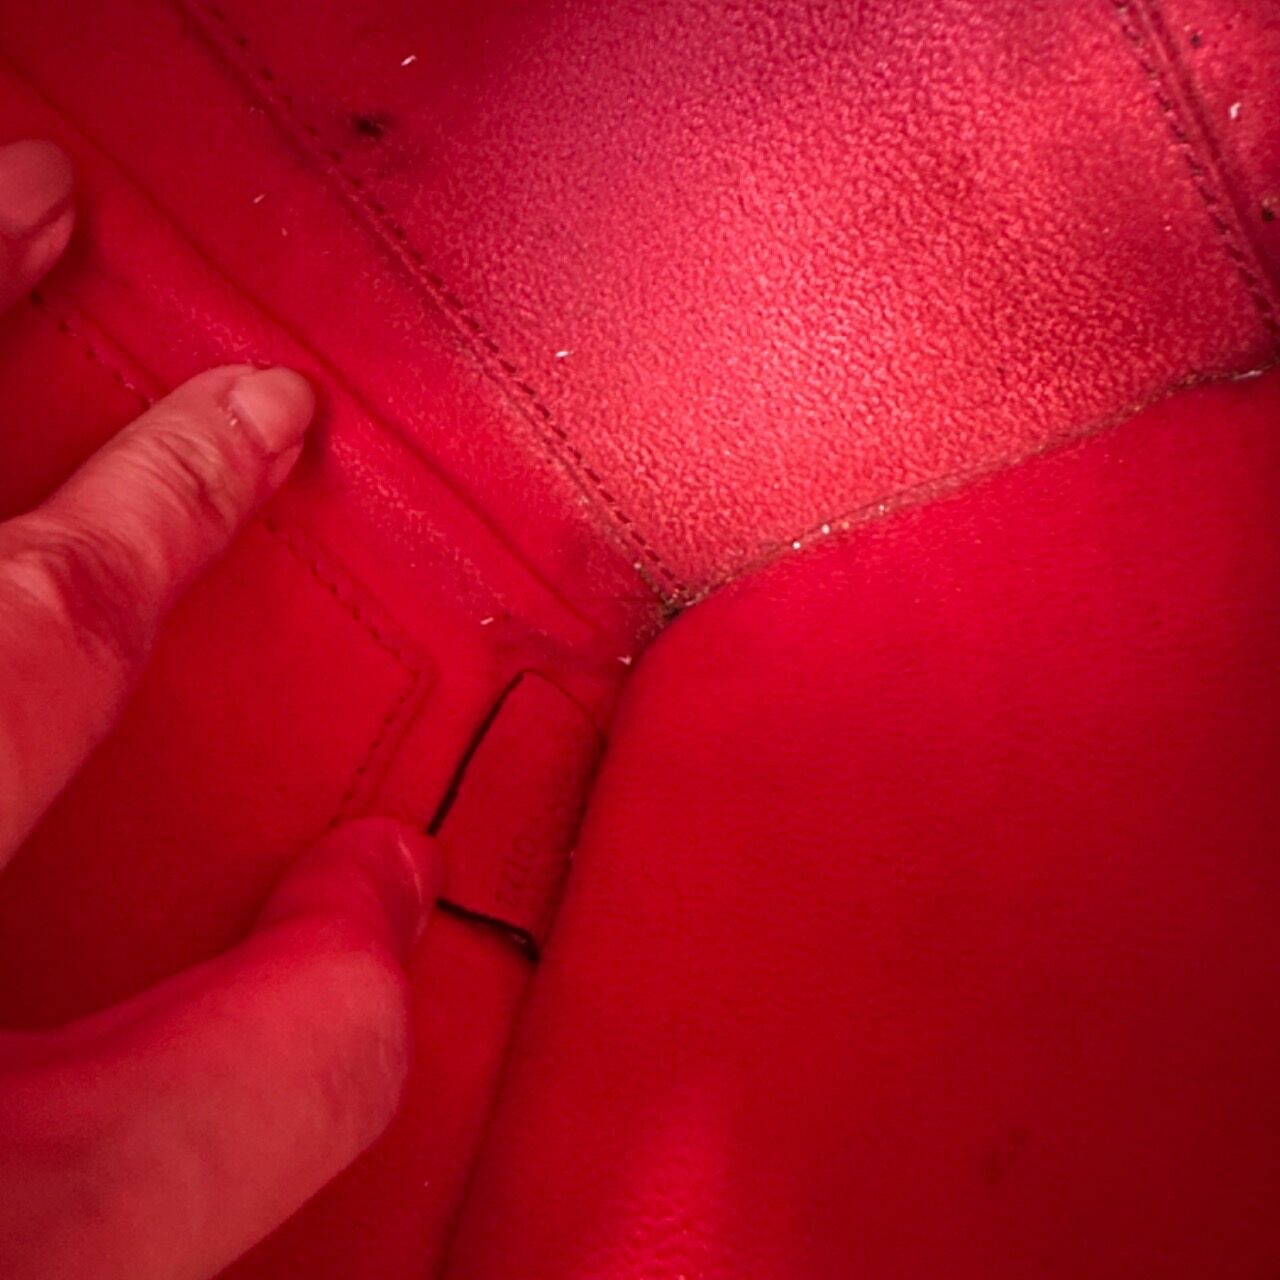 Celine Nano Luggage Red Drummed Calfskin Ghw Handbag